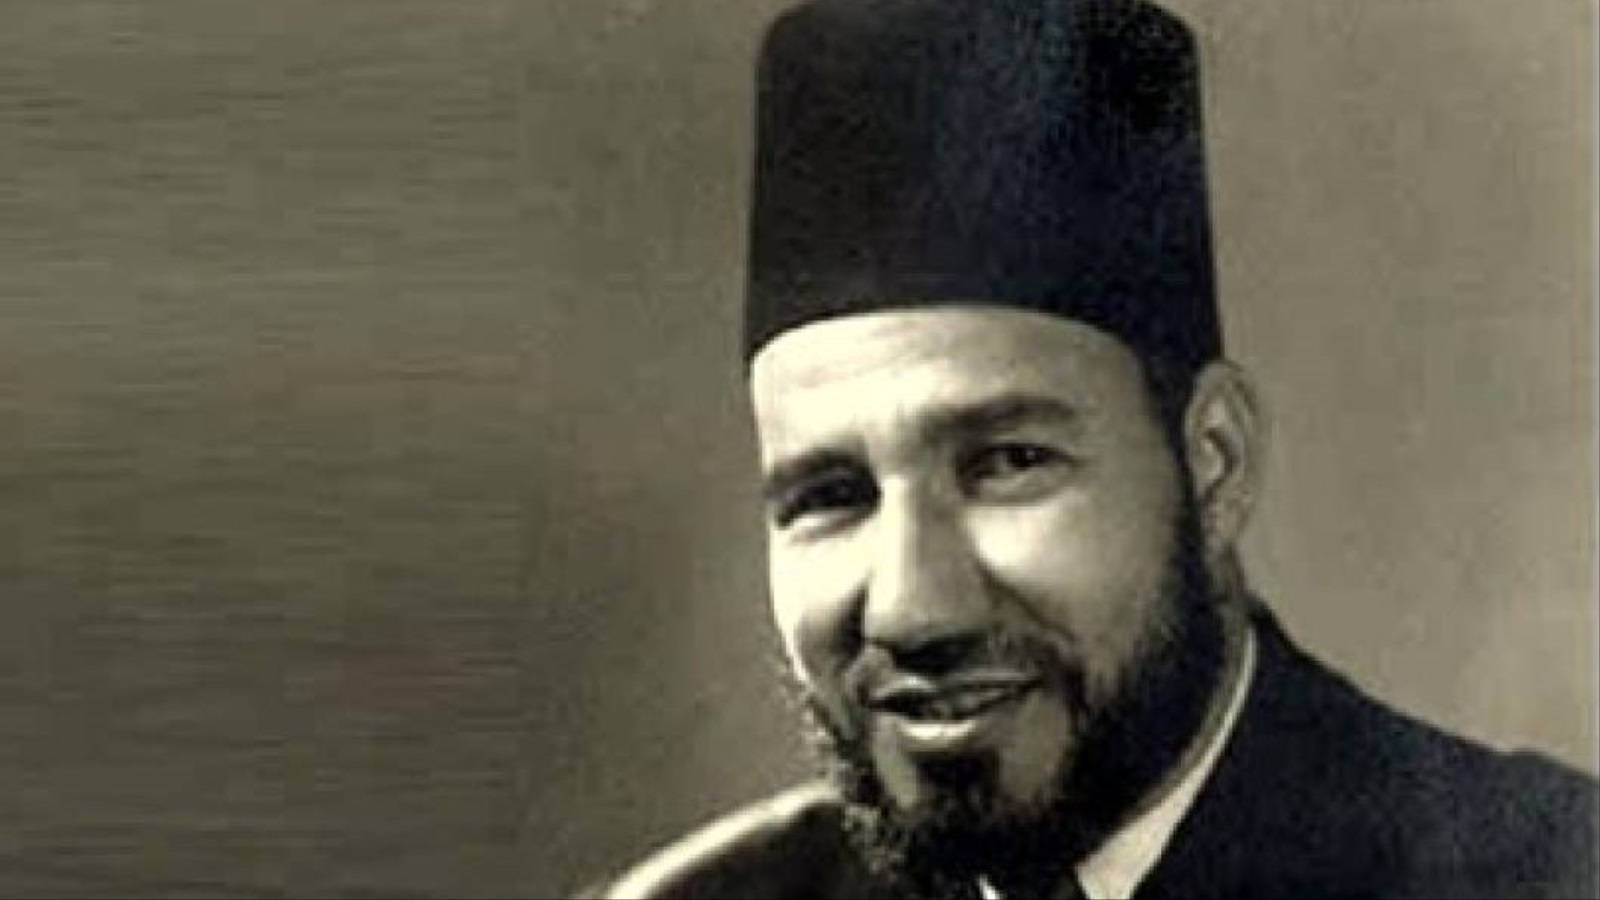 الإمام حسن البنا مؤسس جماعة الإخوان المسلمين(1906-1949م)